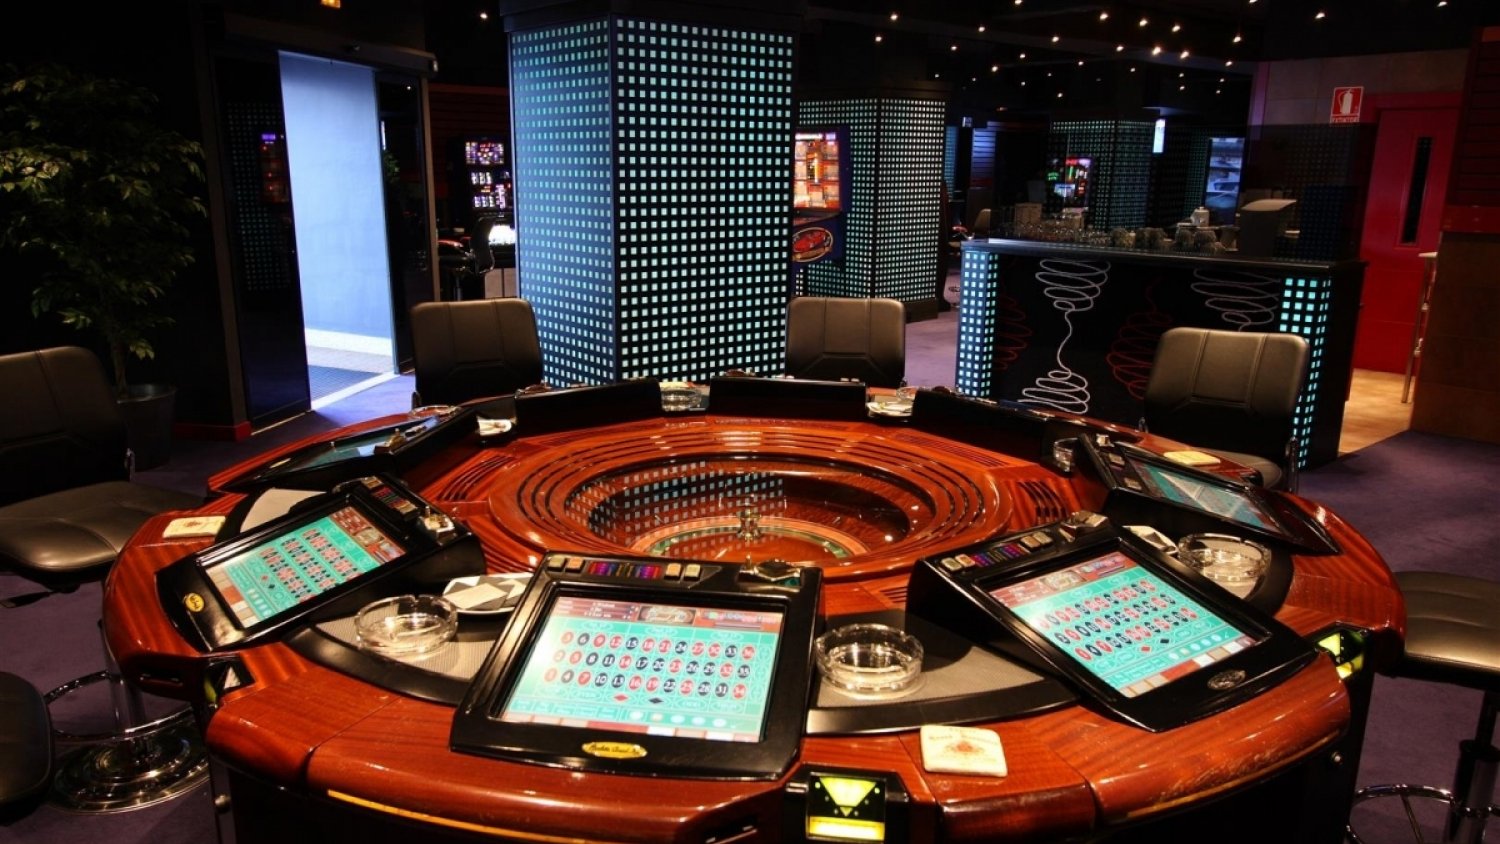 Dos detenidos por estafar 18.000 euros tras manipular una ruleta en un salón de juegos